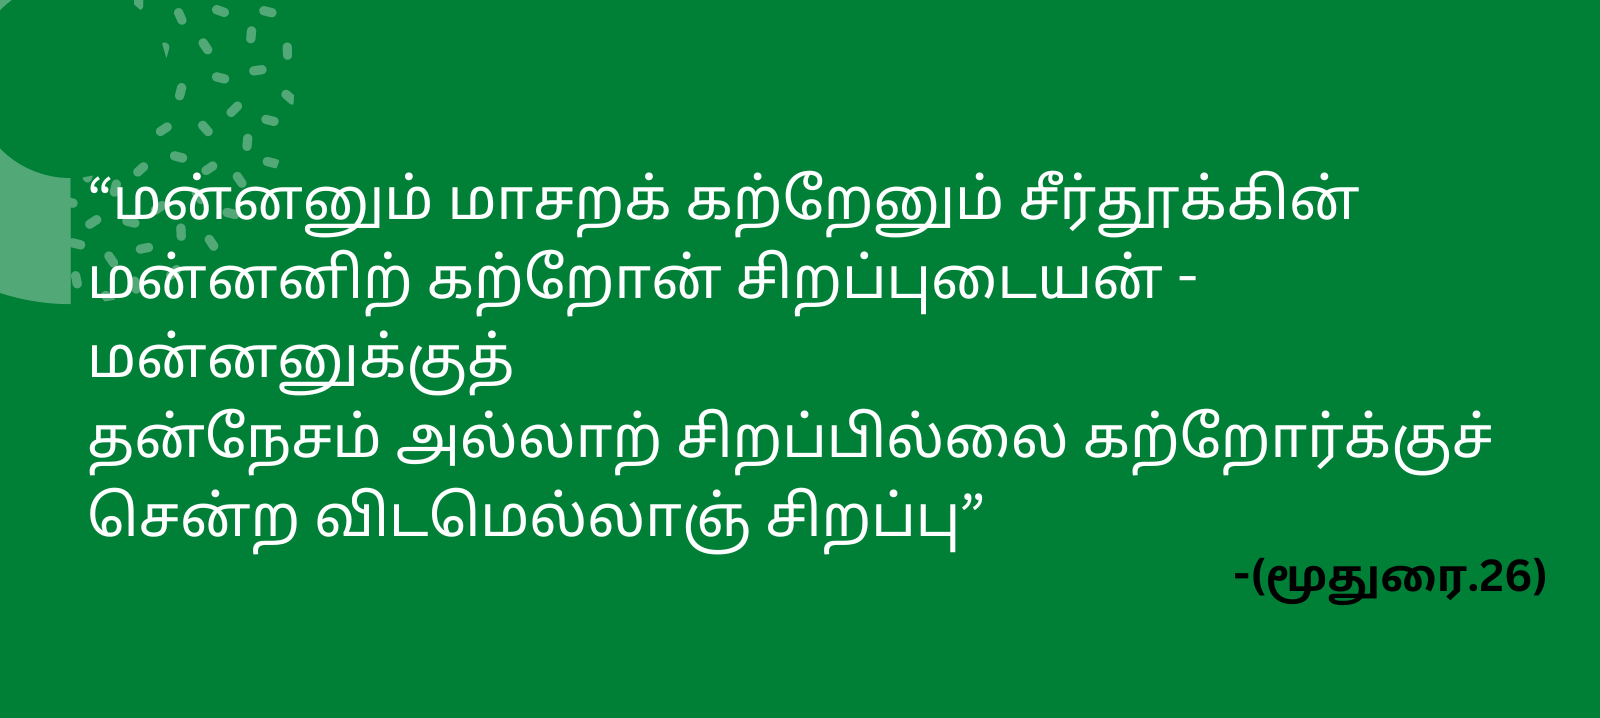 Avvaiyar in Tamil